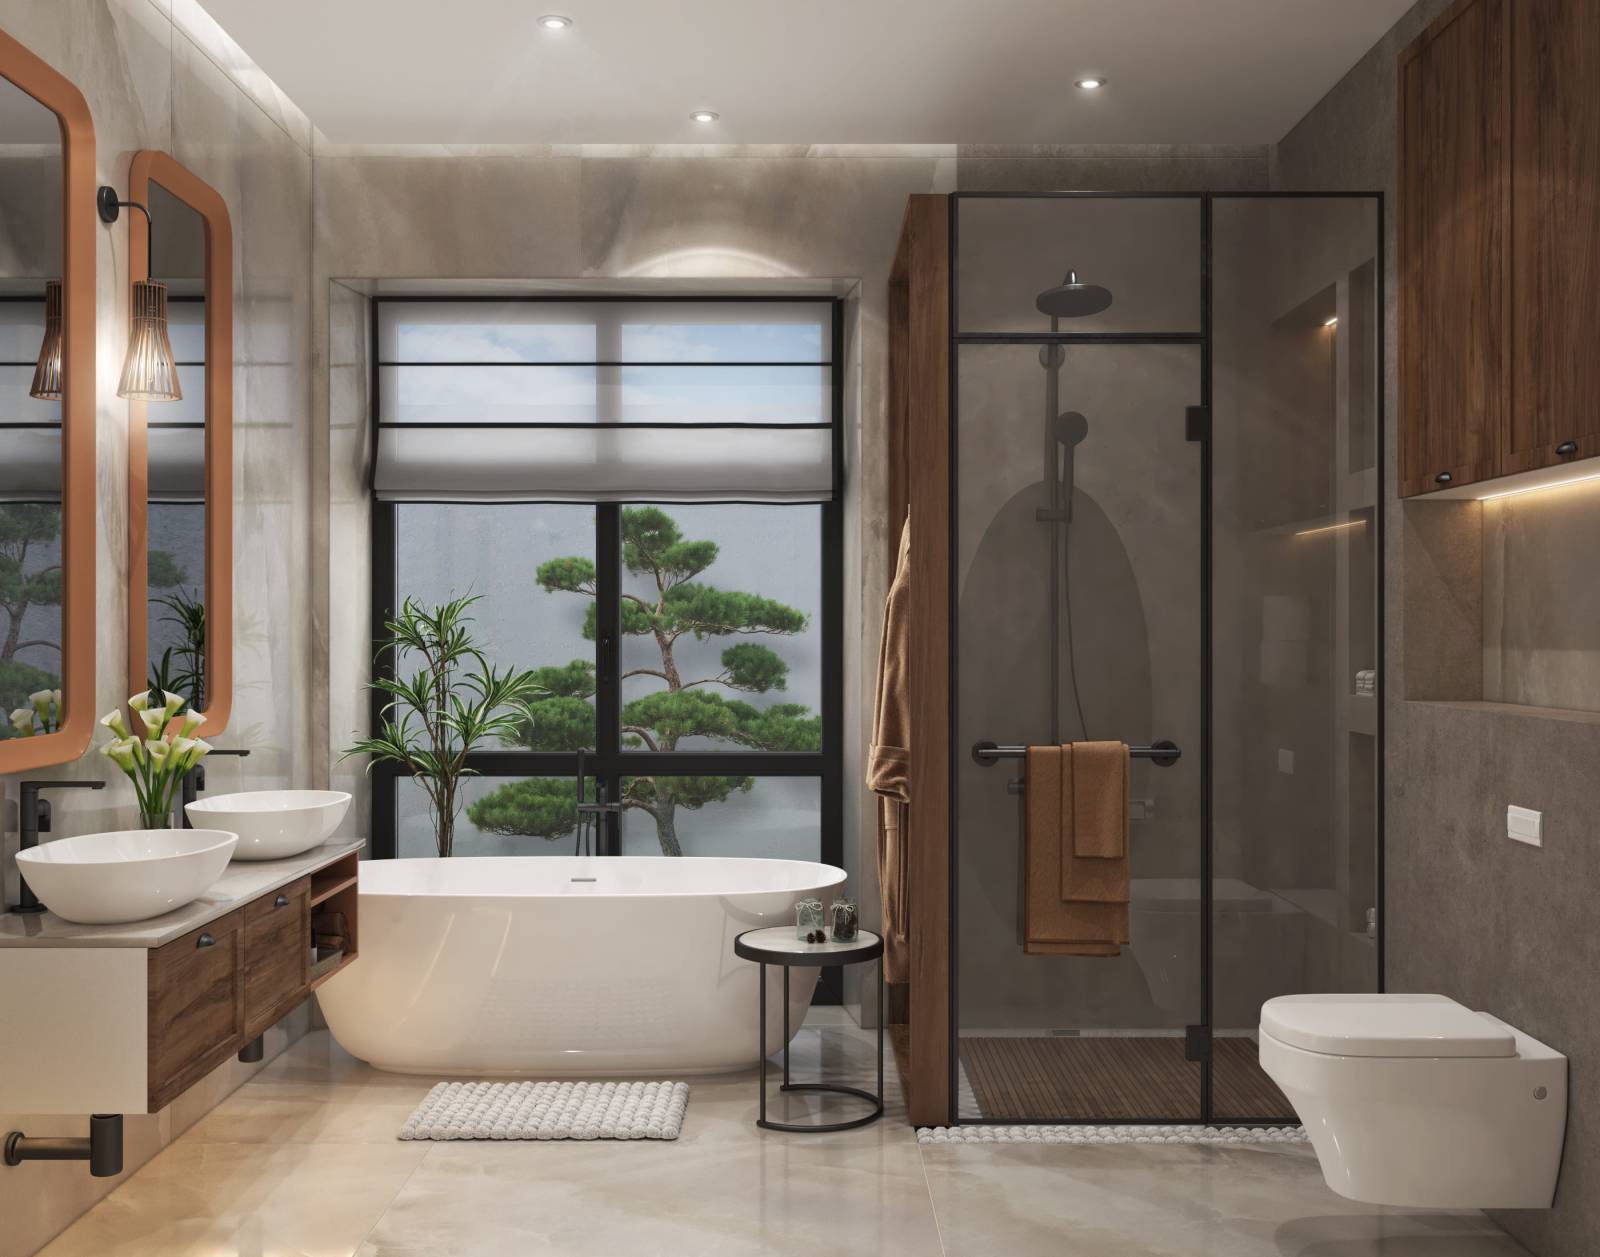 Conception d'une salle de bain design et haut de gamme par un